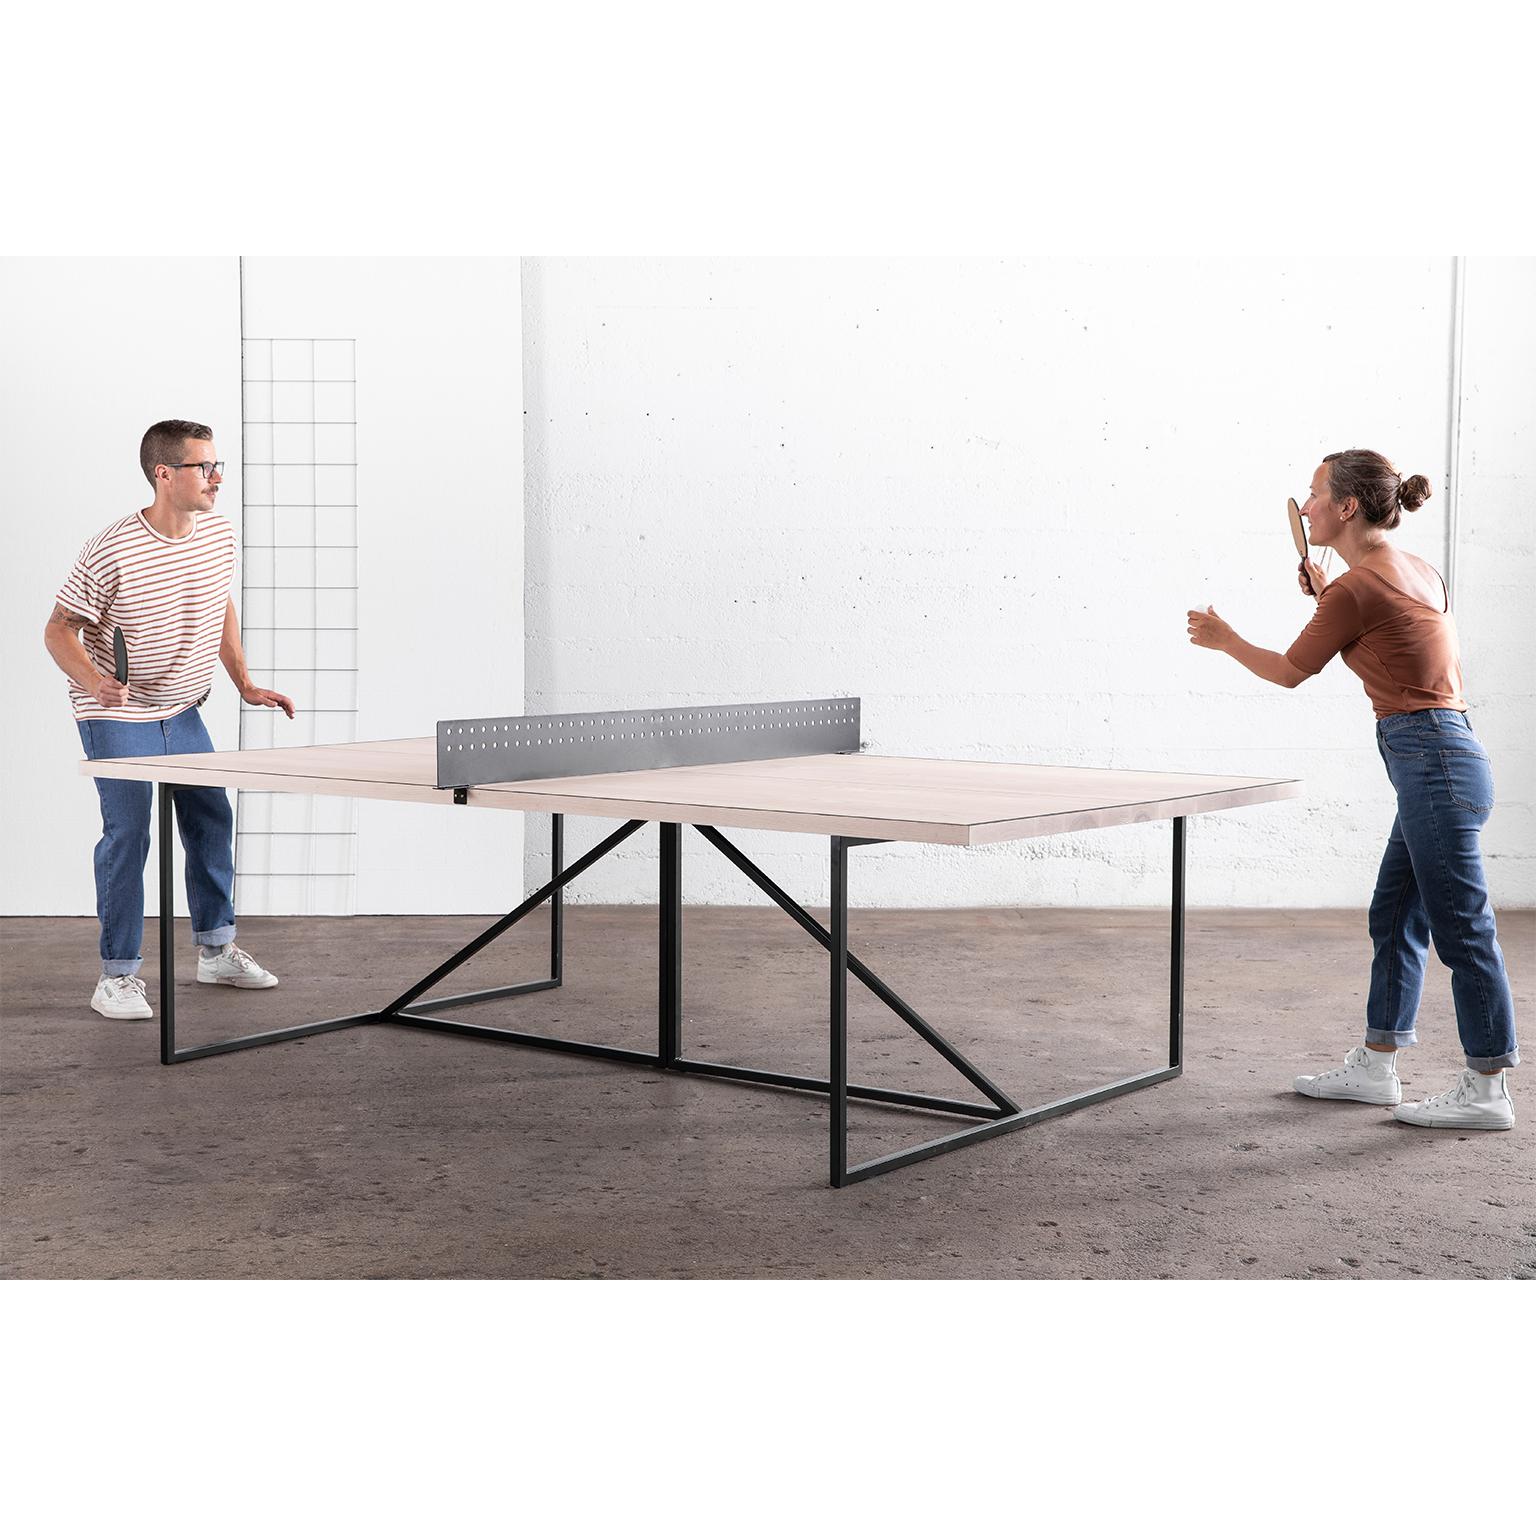 La table de ping-pong Break donne un aspect moderne à ce jeu de société classique.

Le cadre de la table est soudé à la main à partir d'un acier durable et peut être fini dans l'une de nos trois options de métal. La table est divisée par un filet